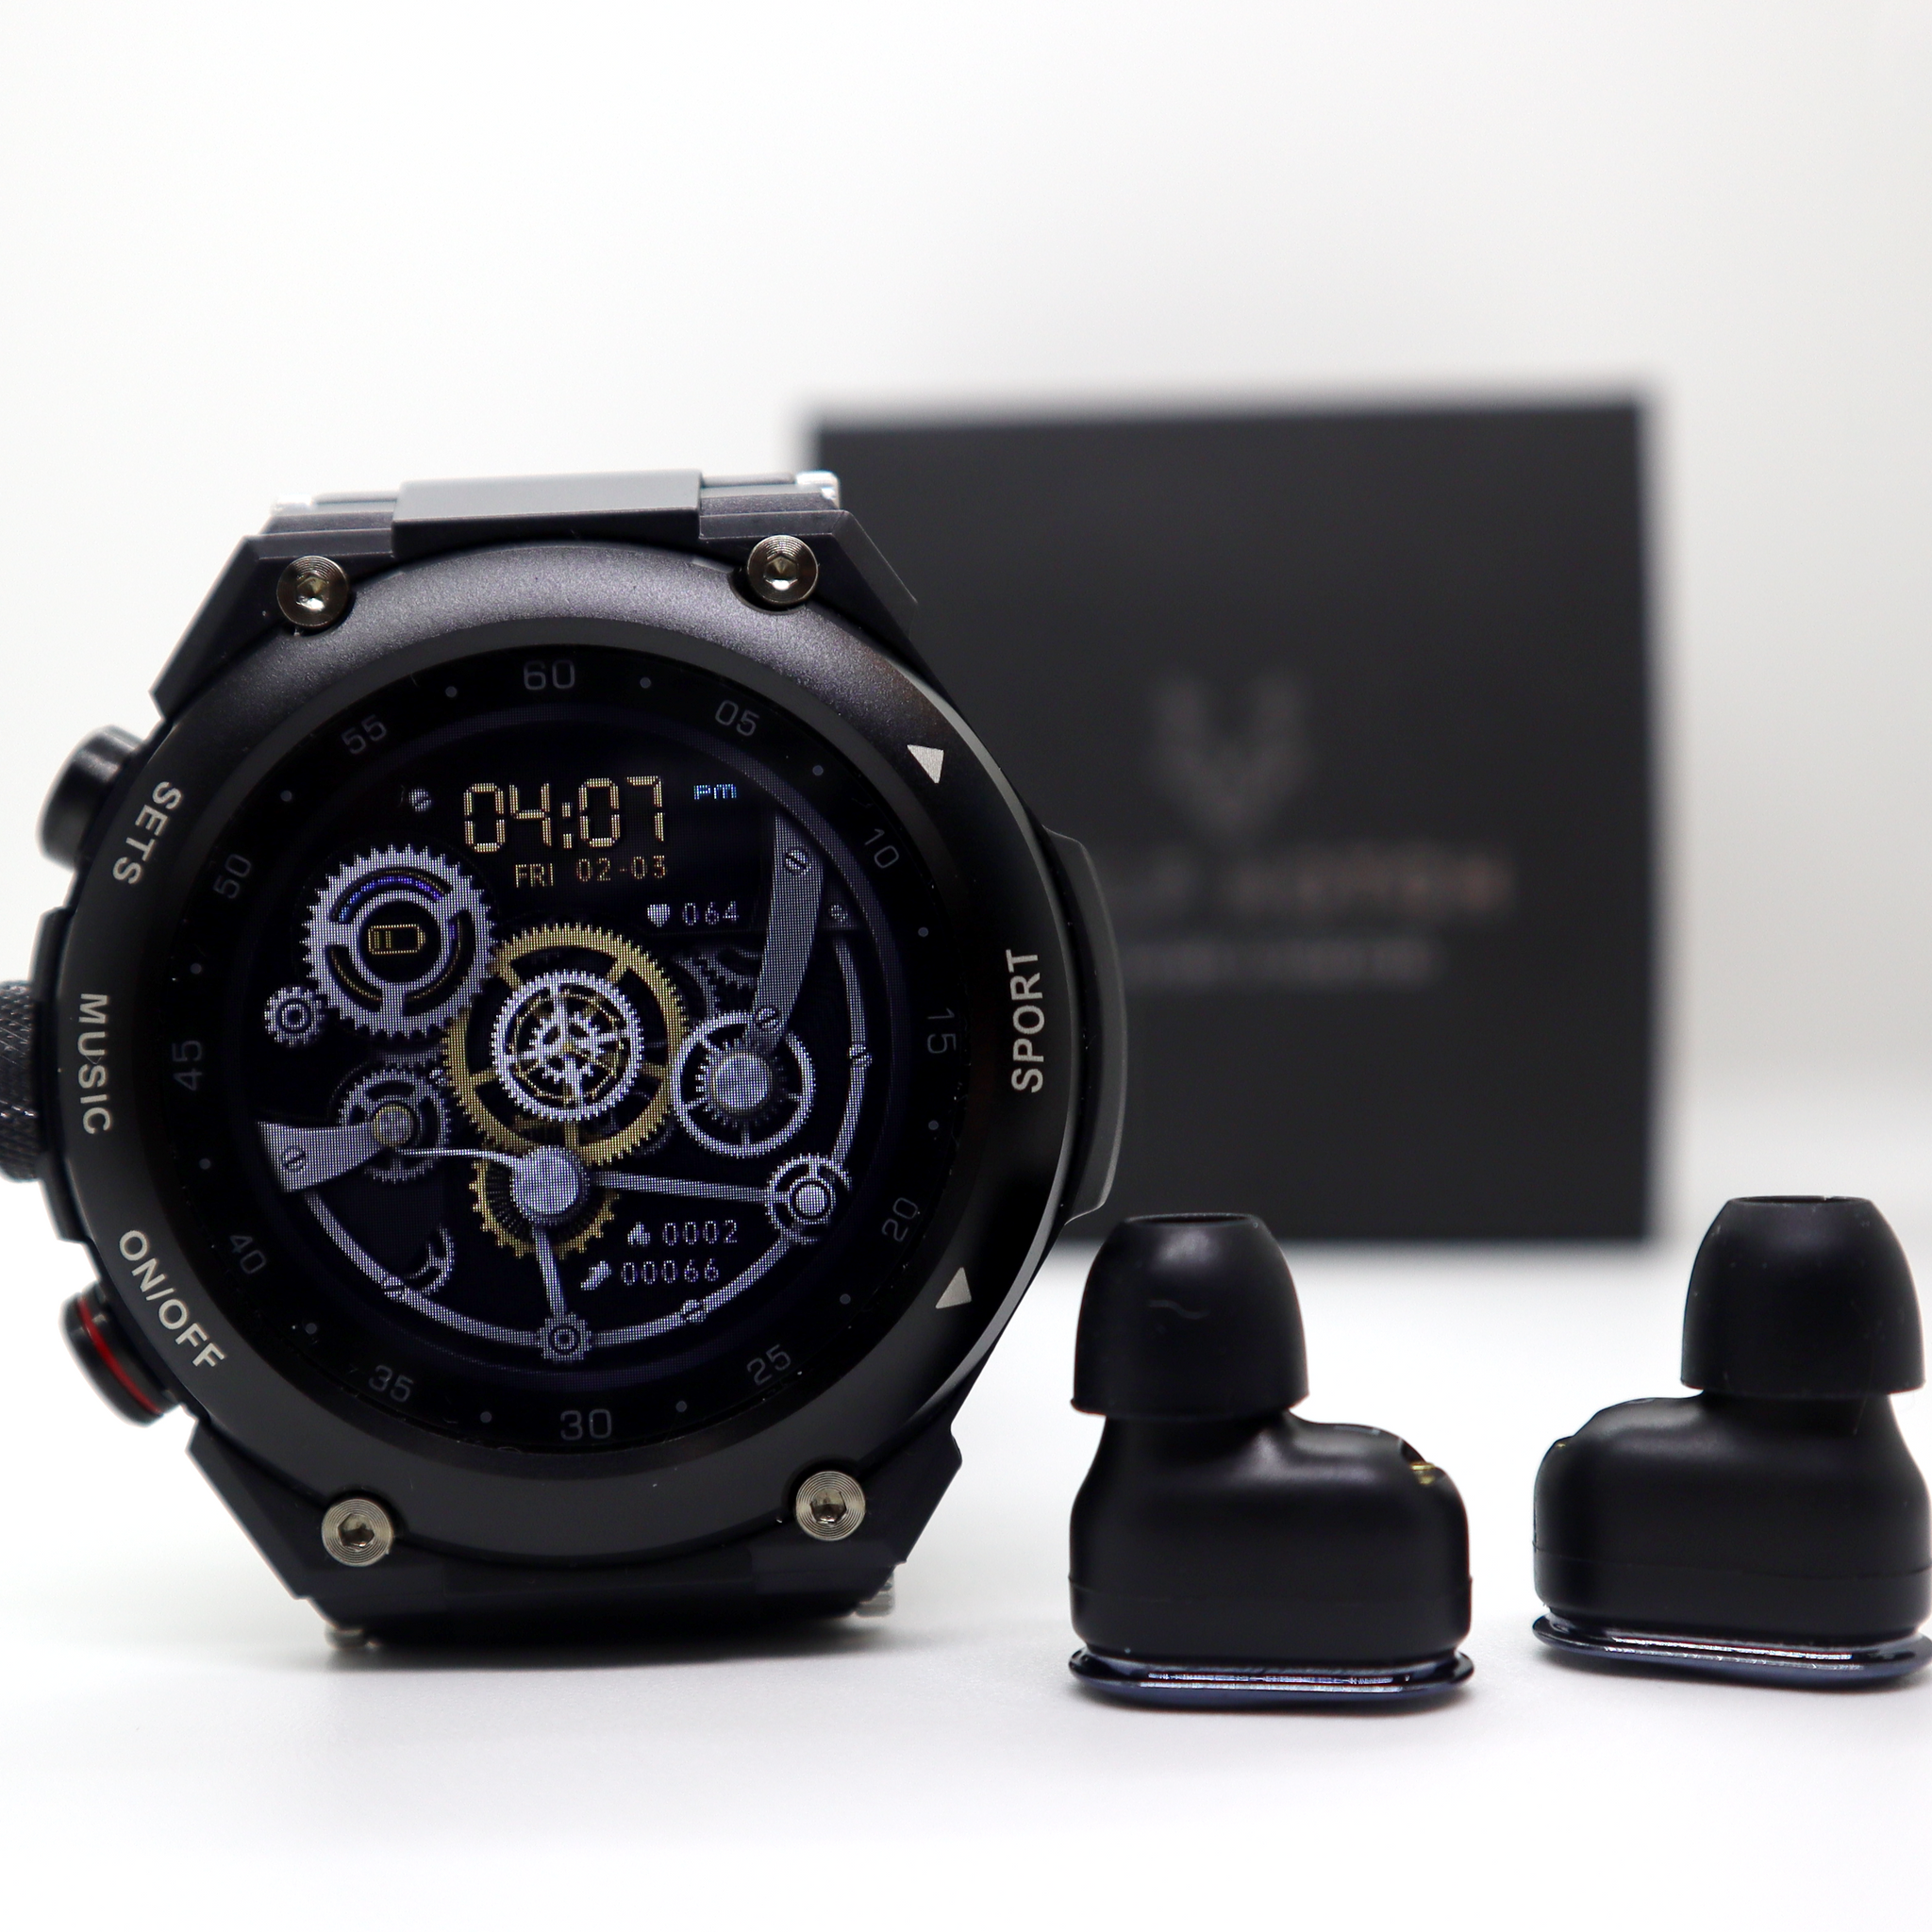 Die Cuthwulf V2 – All-in-One-Smartwatch mit Bluetooth-Ohrhörern